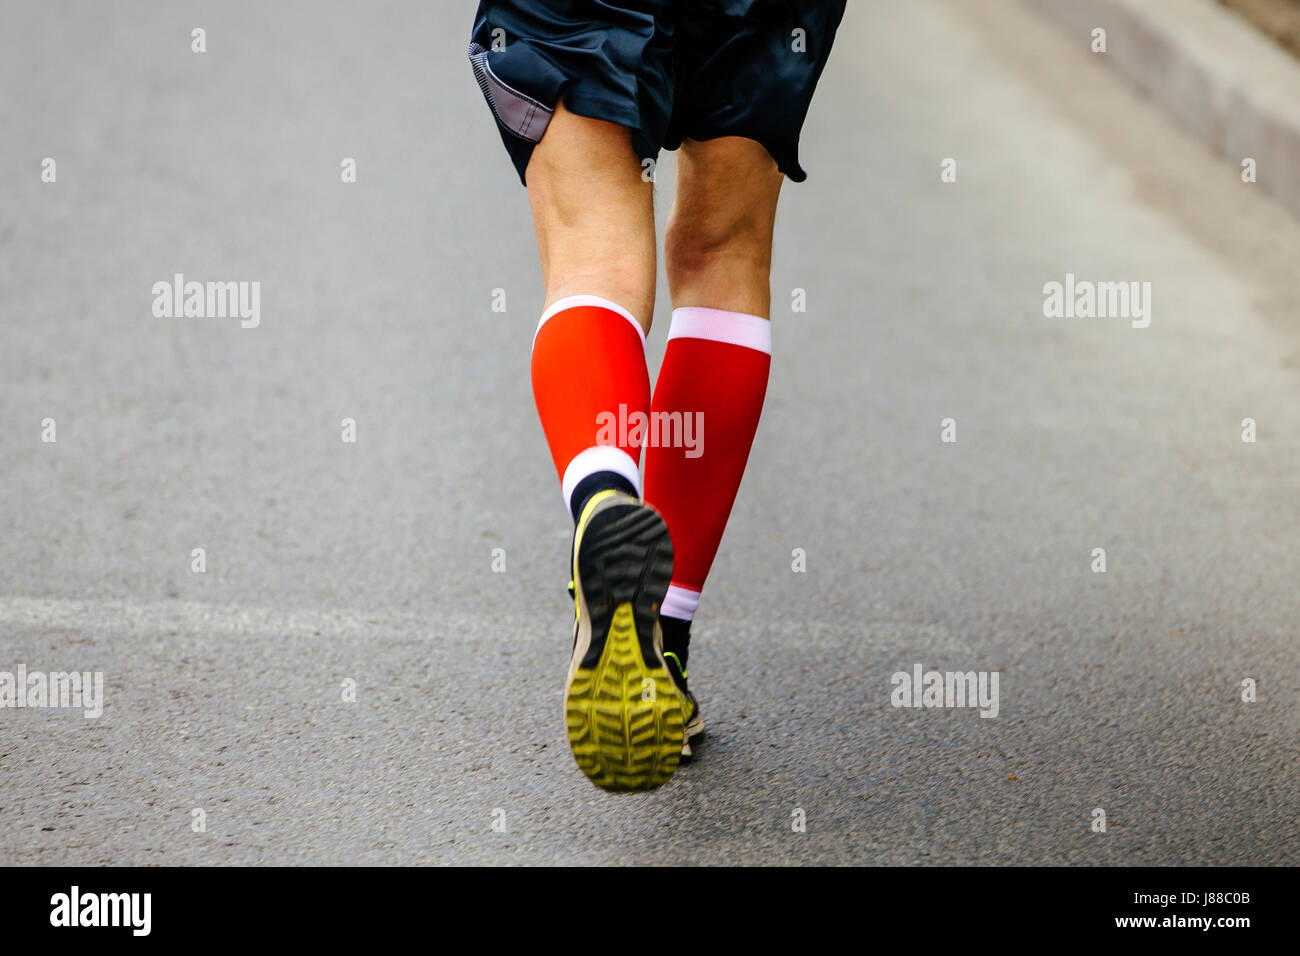 Piedi posteriori uomini runner in rosso calze di compressione in funzione street Foto Stock